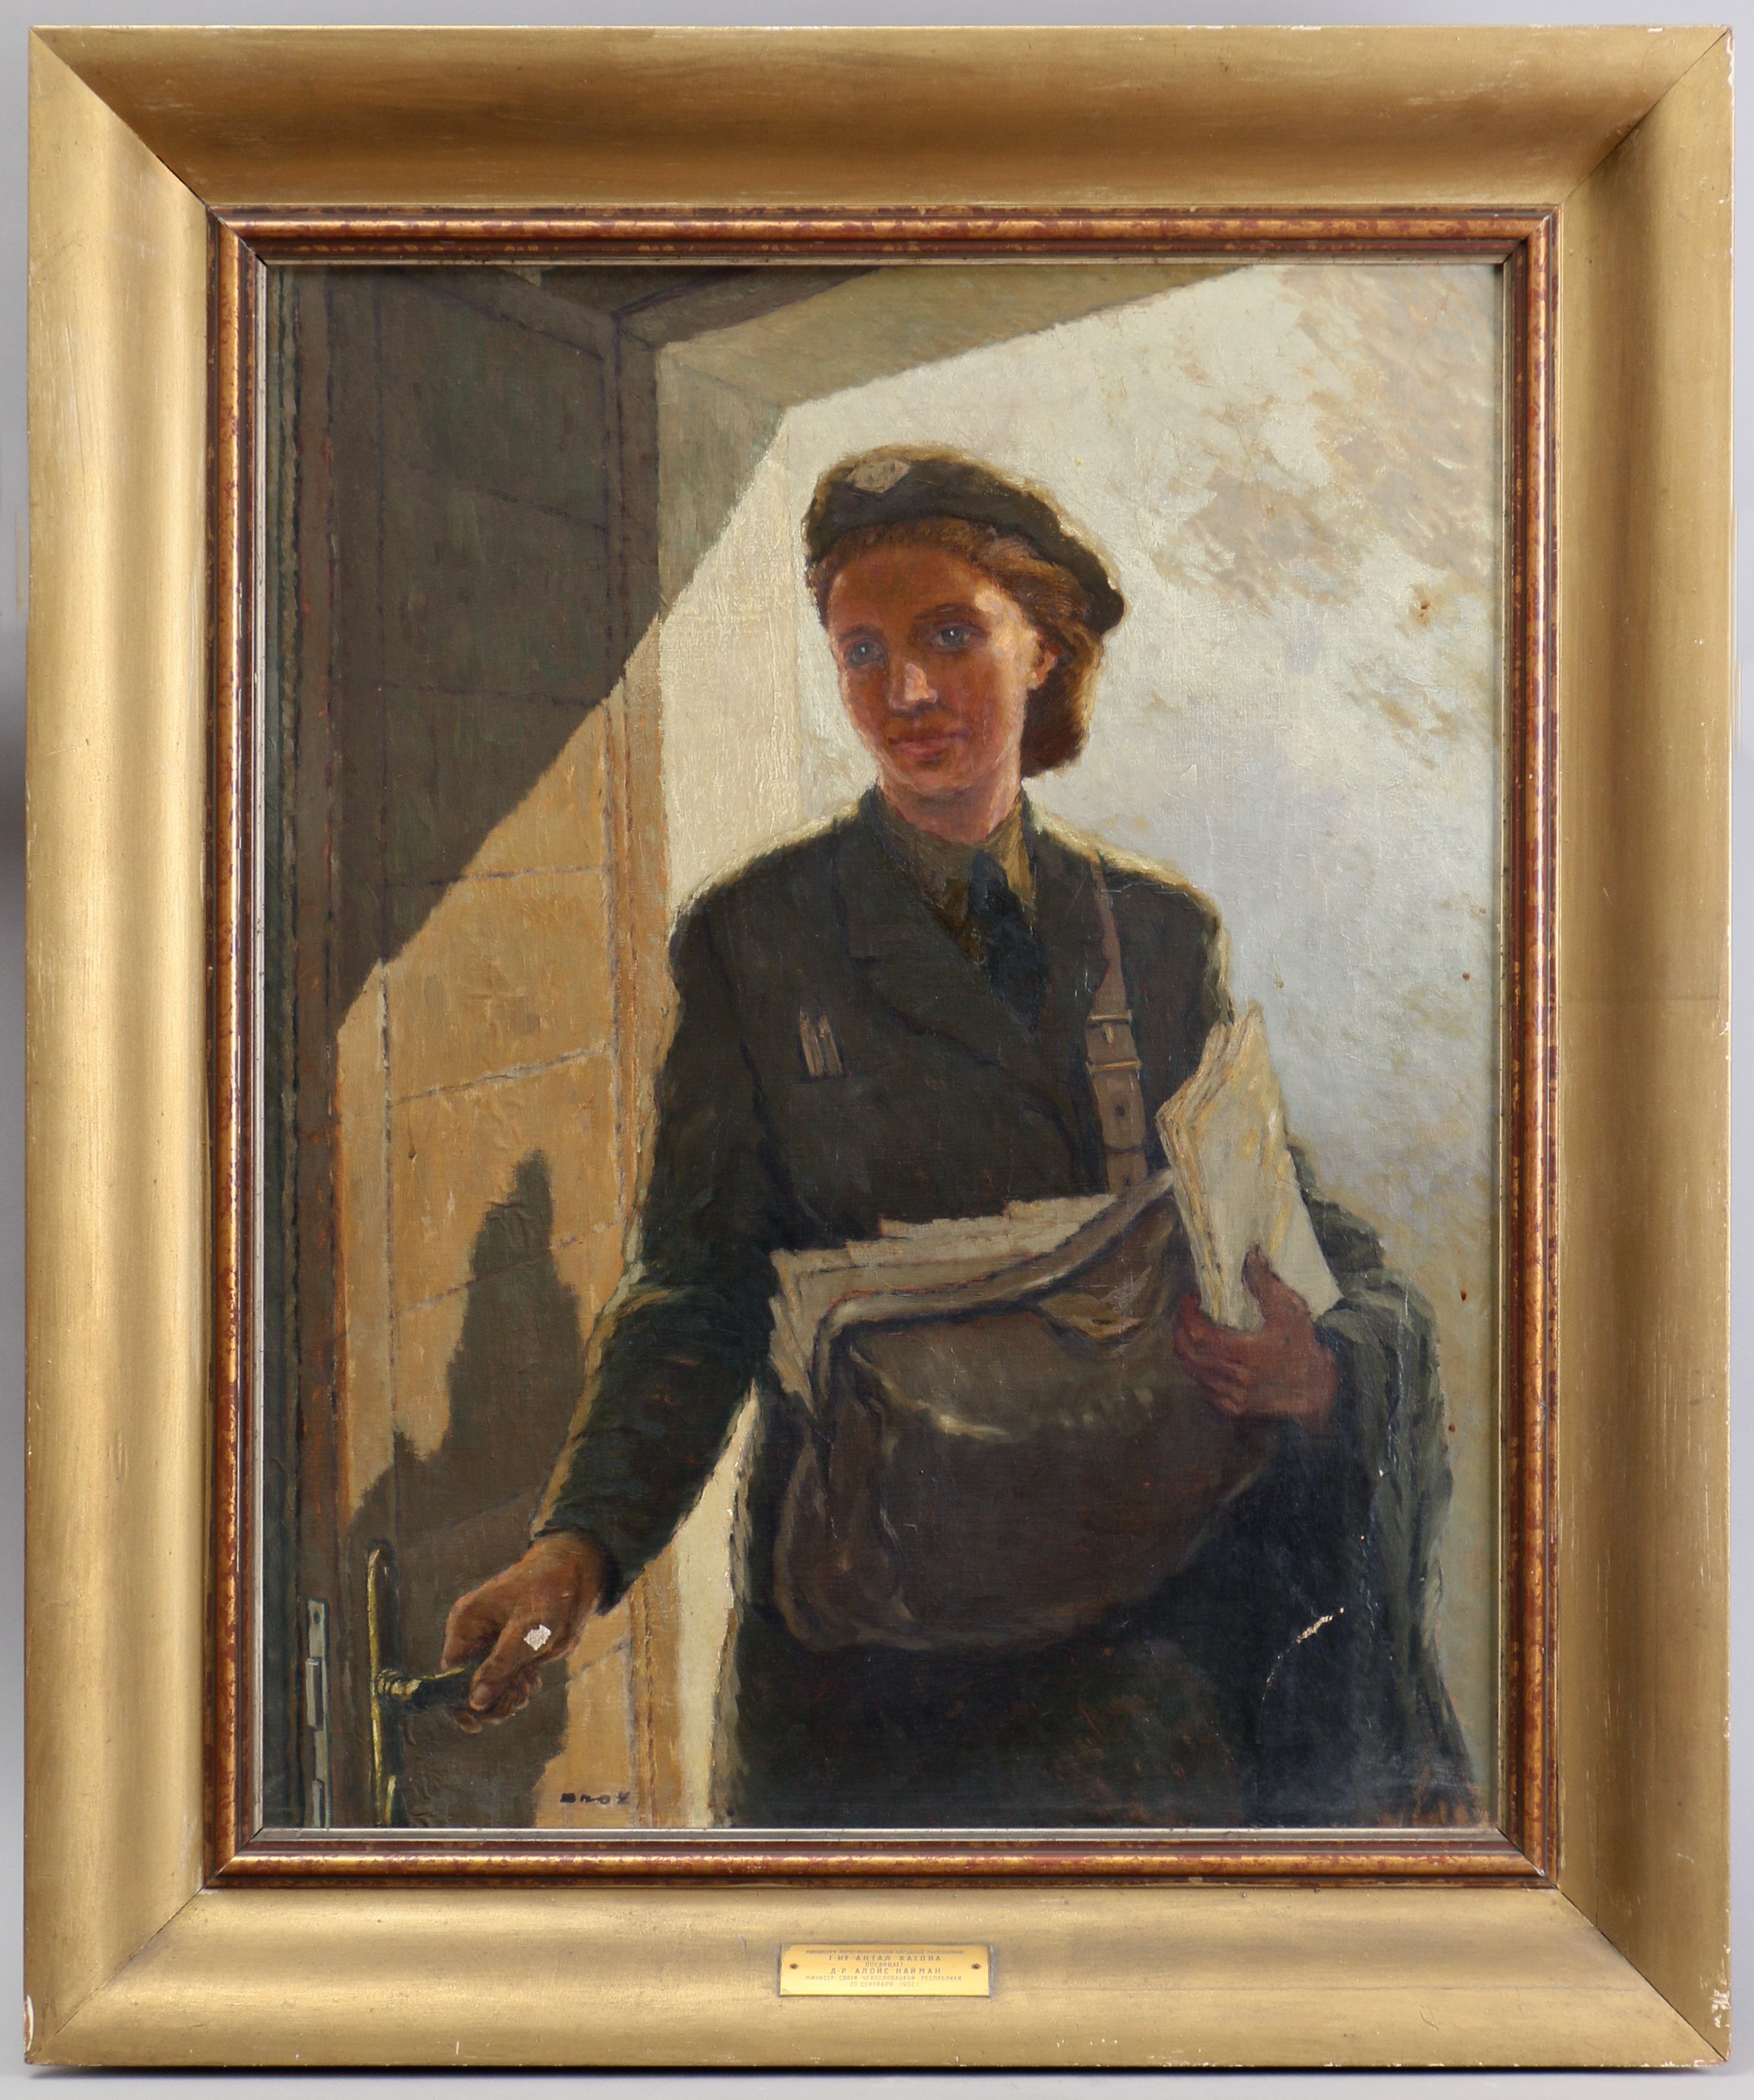 Dobry den című, postásnőt ábrázoló kép (Postamúzeum CC BY-NC-SA)